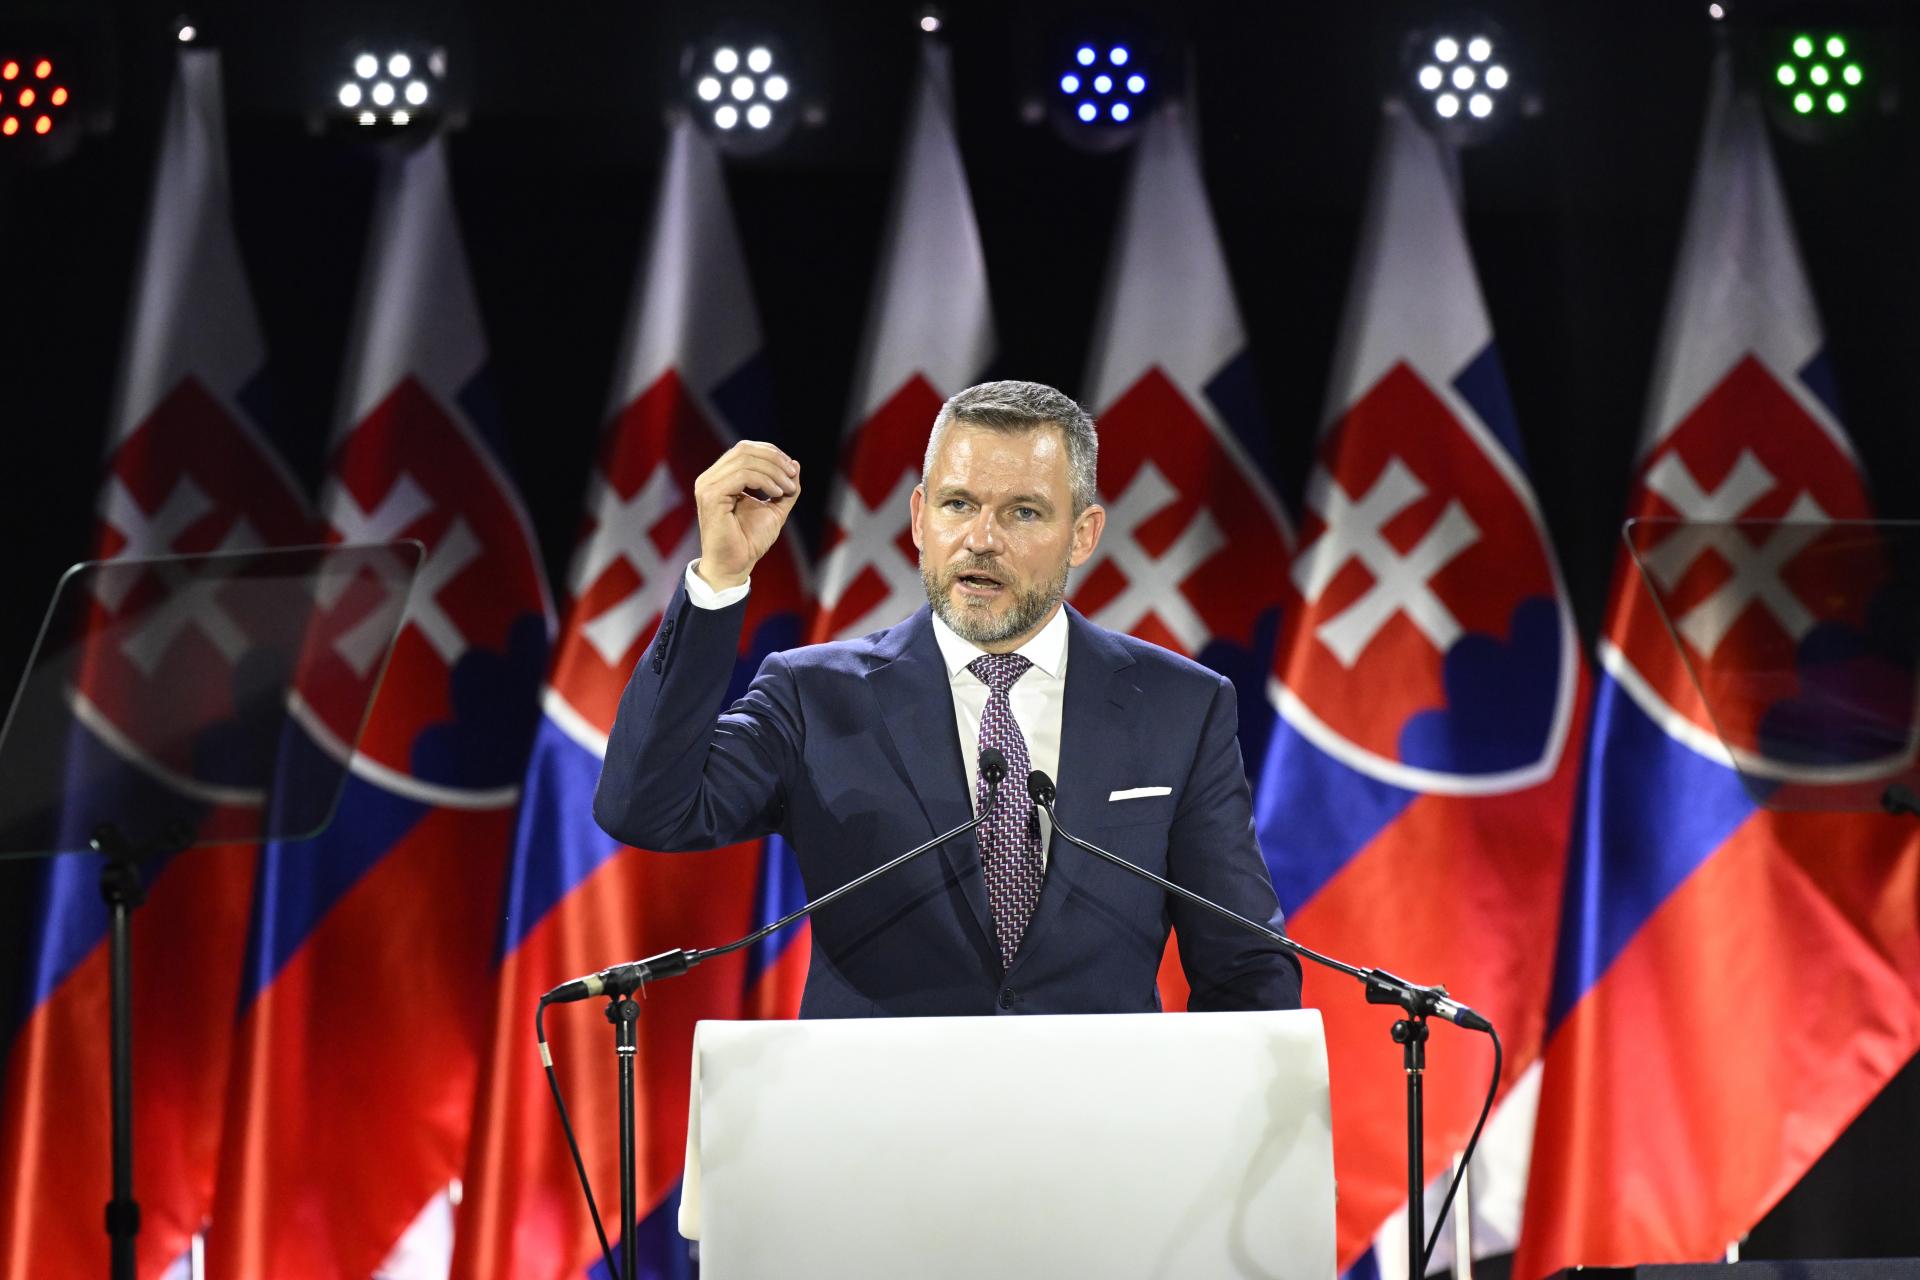 Slovensko je podľa Hlasu lídrom v dĺžke verejných obstarávaní, procesy brzdia rozvoj regiónov